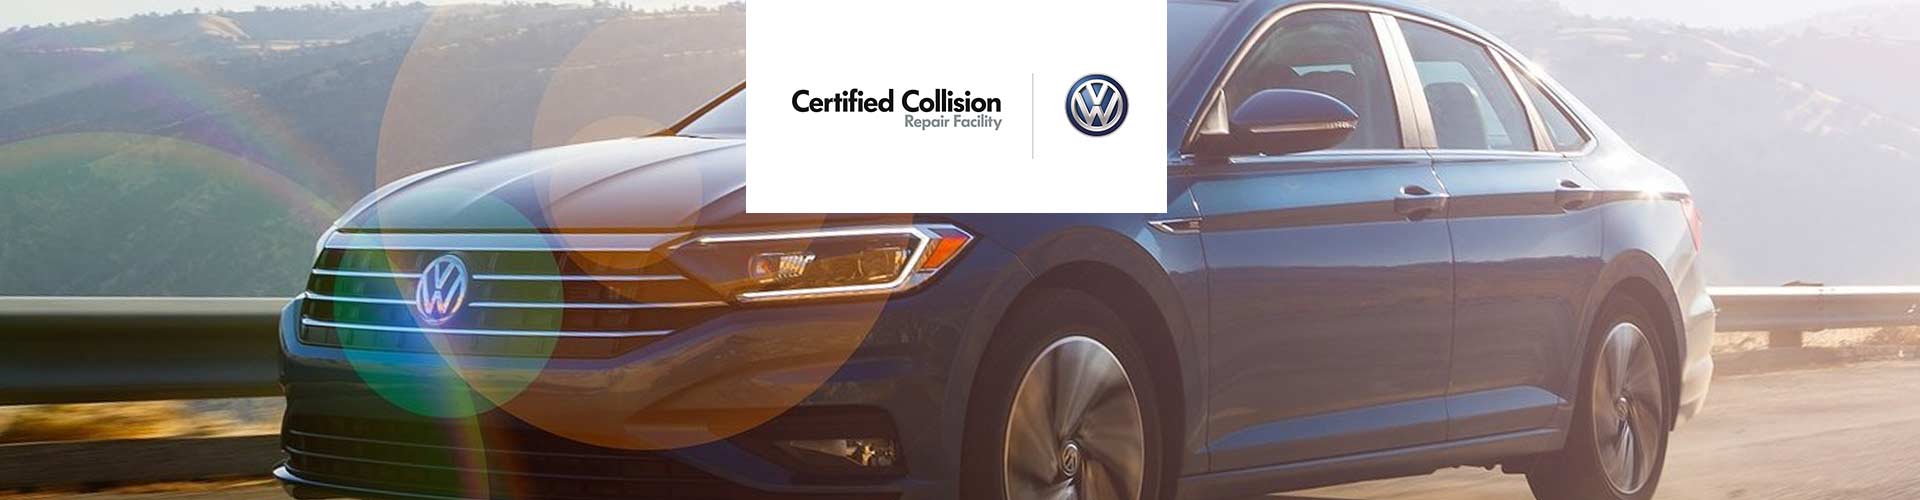 VW Certified